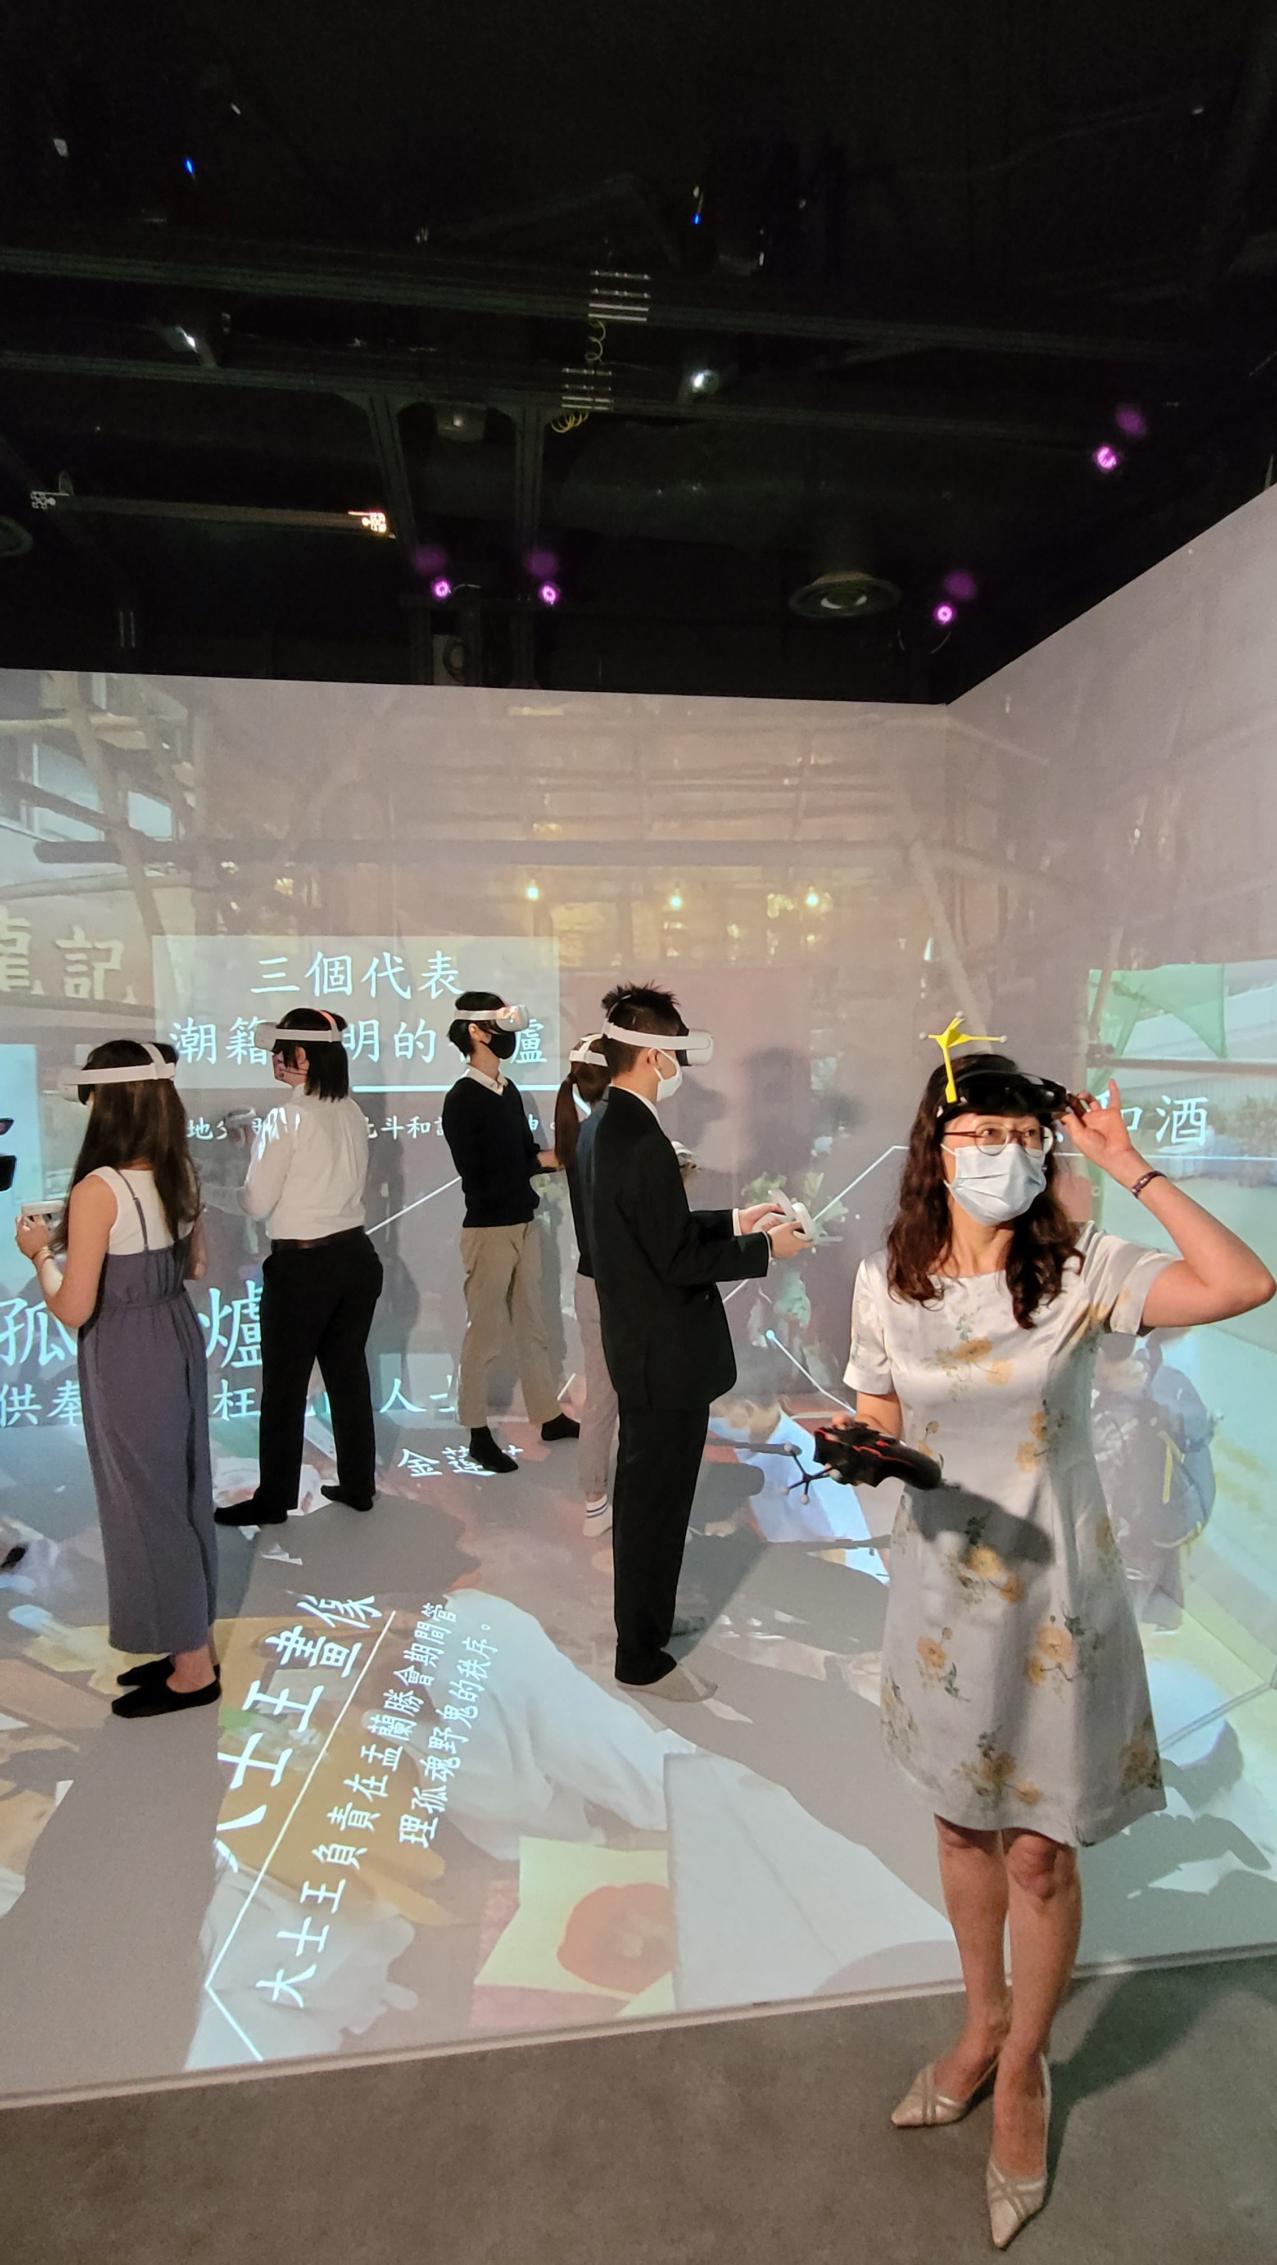 陳教授及其團隊展示如何用VR眼鏡，在樹仁大學實體的VR Cave穿越時空，尤如置身2021年三角碼頭盂蘭勝會現場聲畫俱備地觀看盛況。